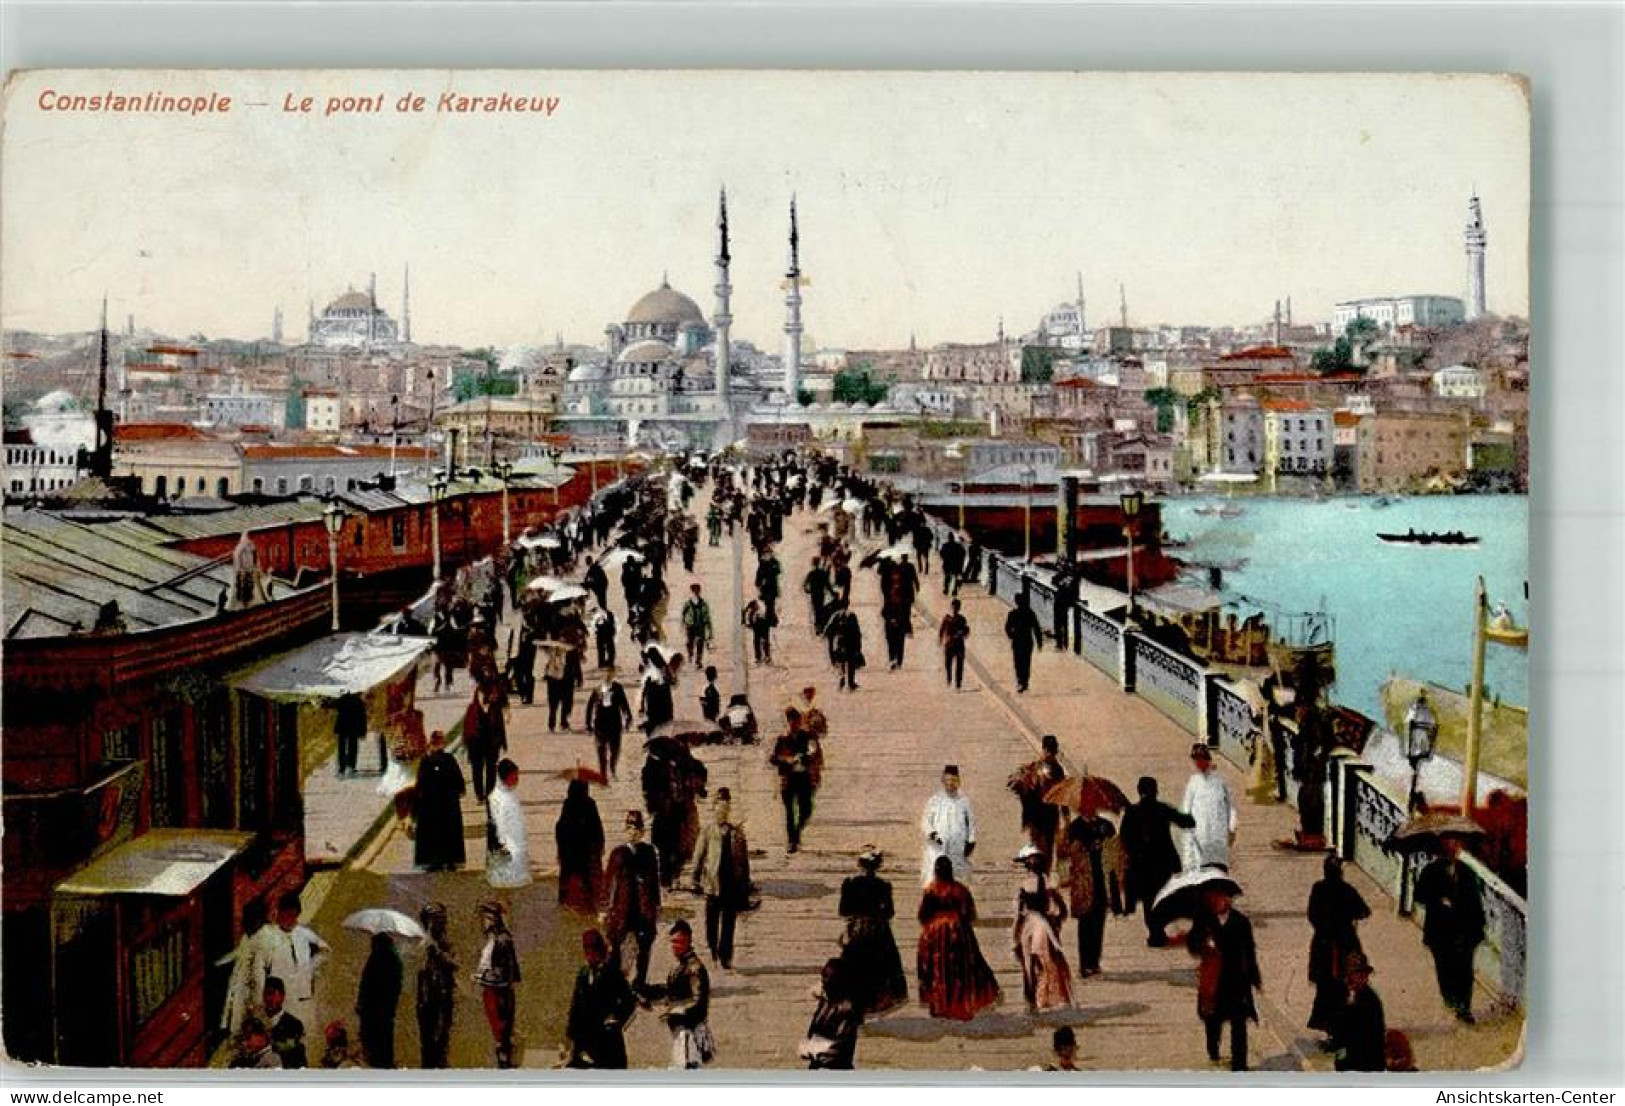 39830206 - Konstantinopel Istanbul - Konstantinopel